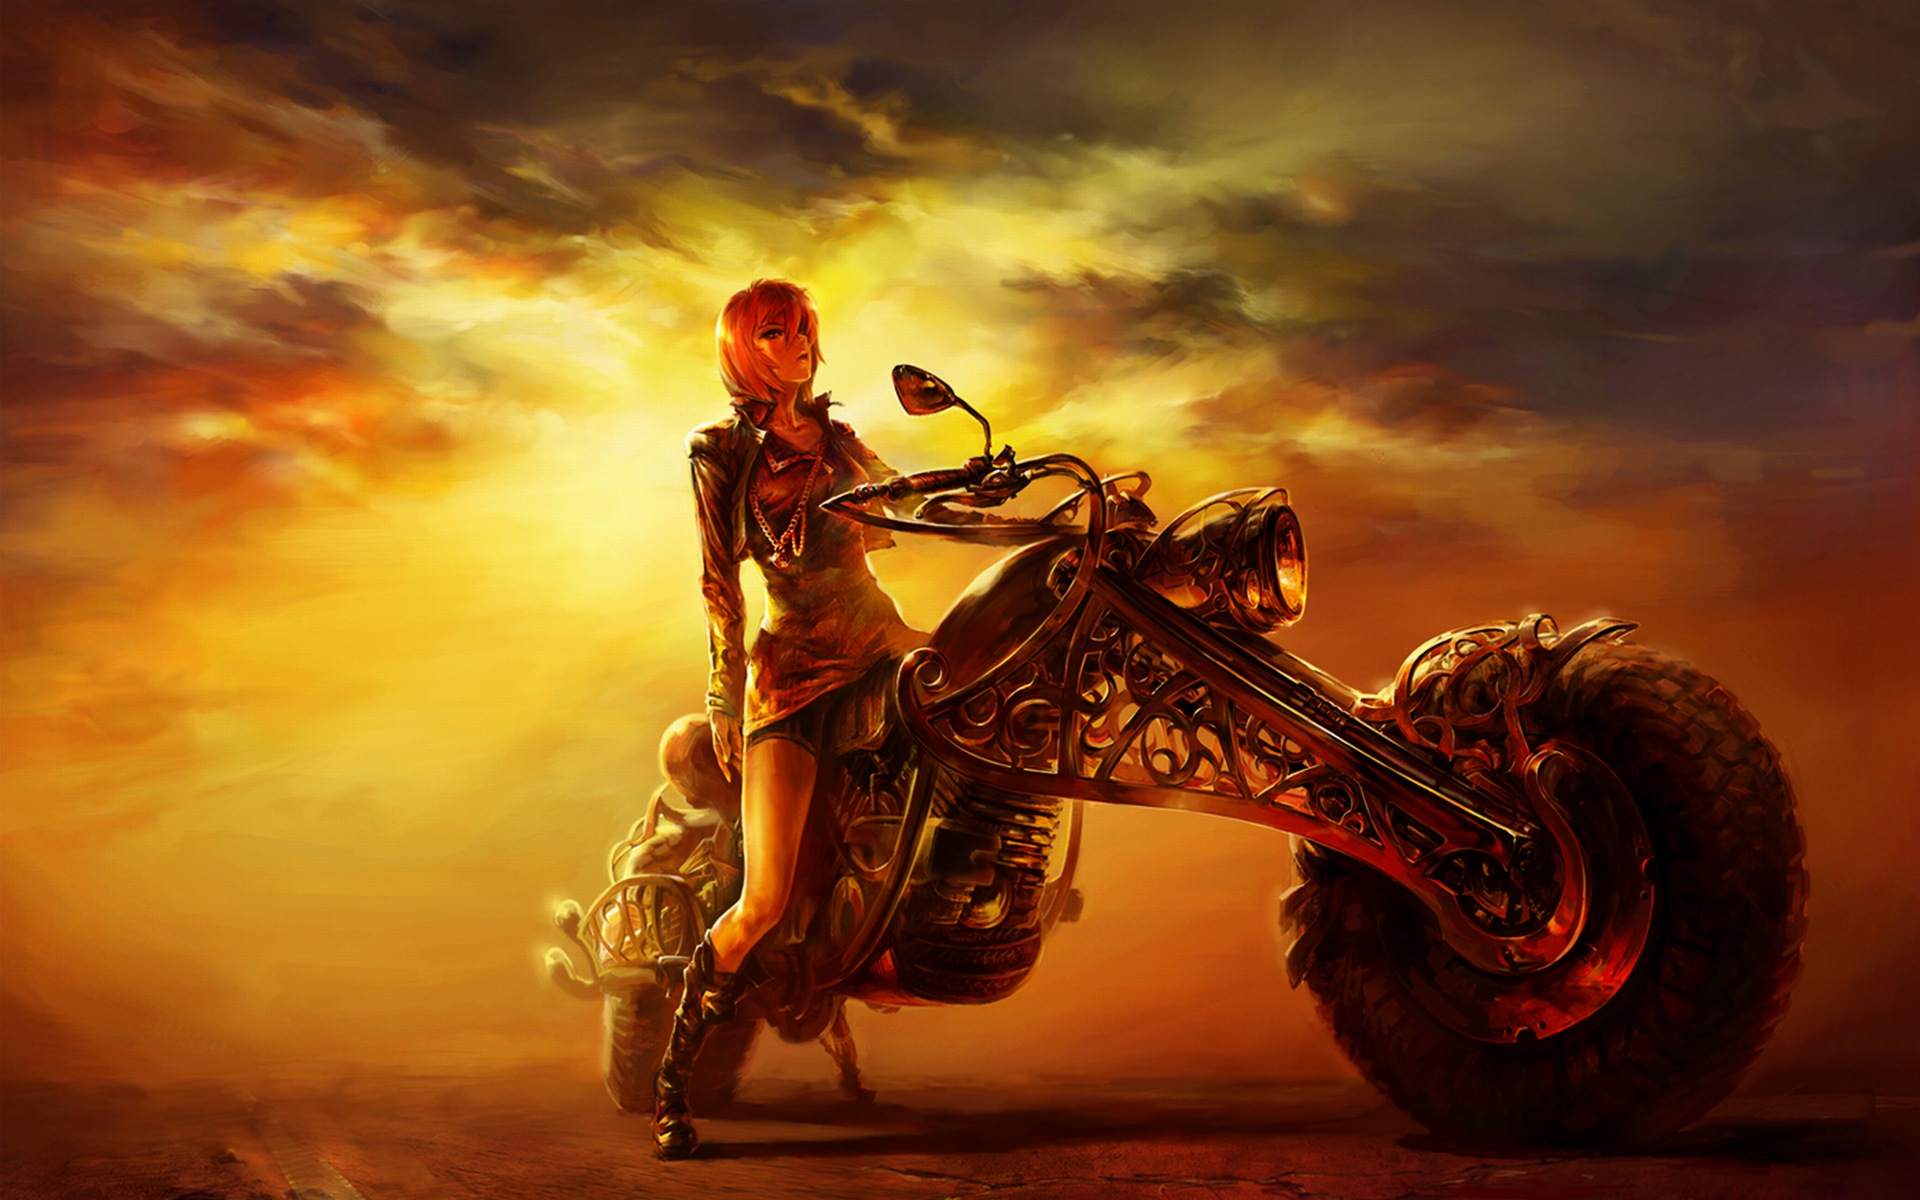 cg girl wallpaper,motociclo,veicolo,corsa nel deserto,motociclismo,cielo